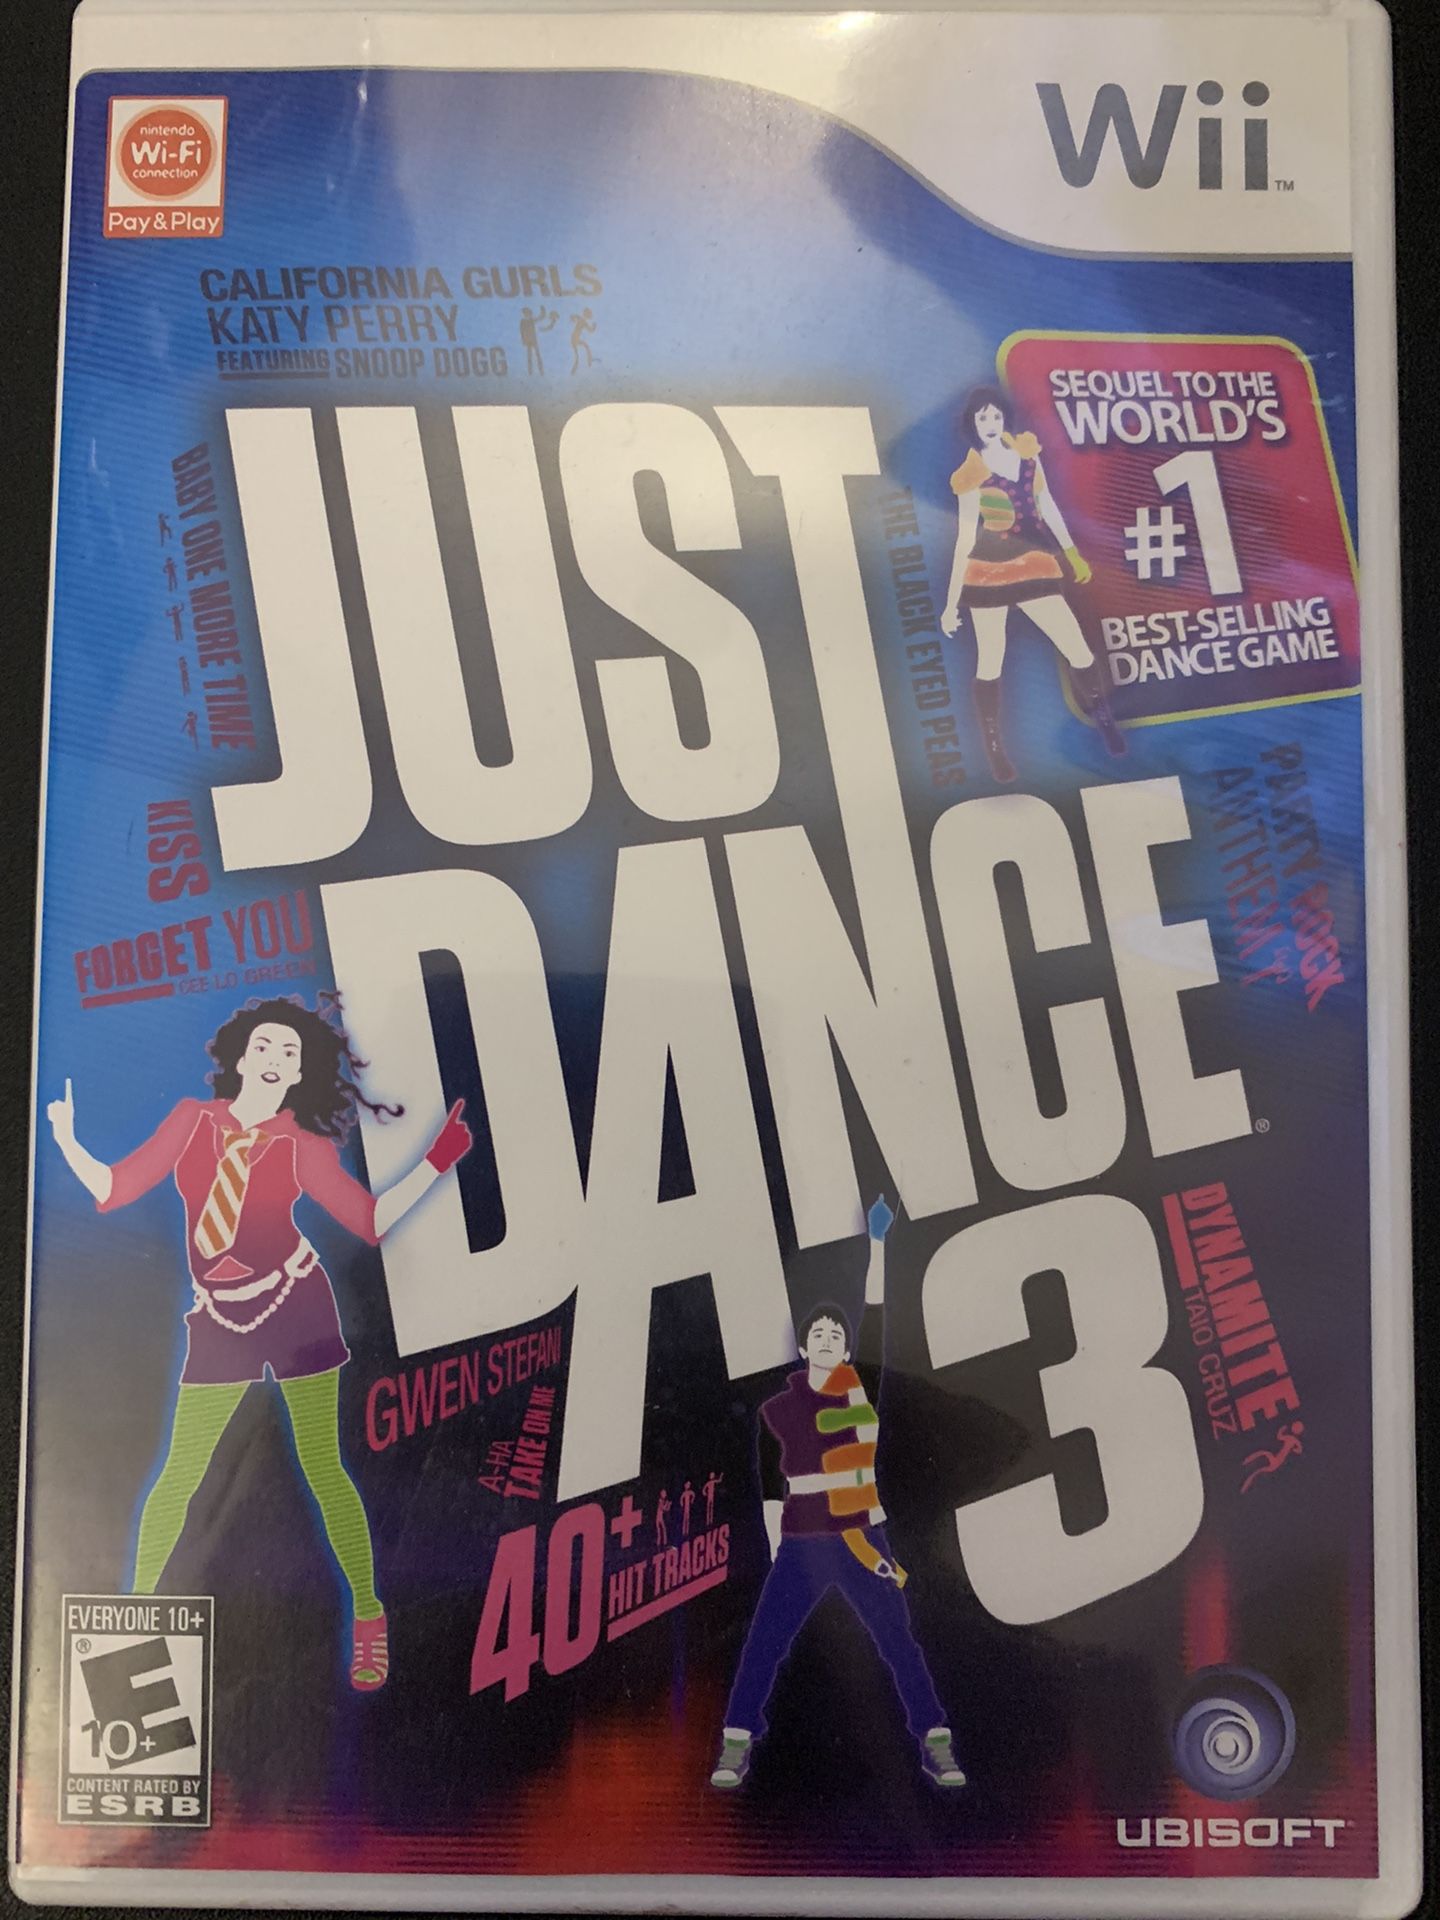 JUST DANCE 3 (Nintendo Wii + Wii U)